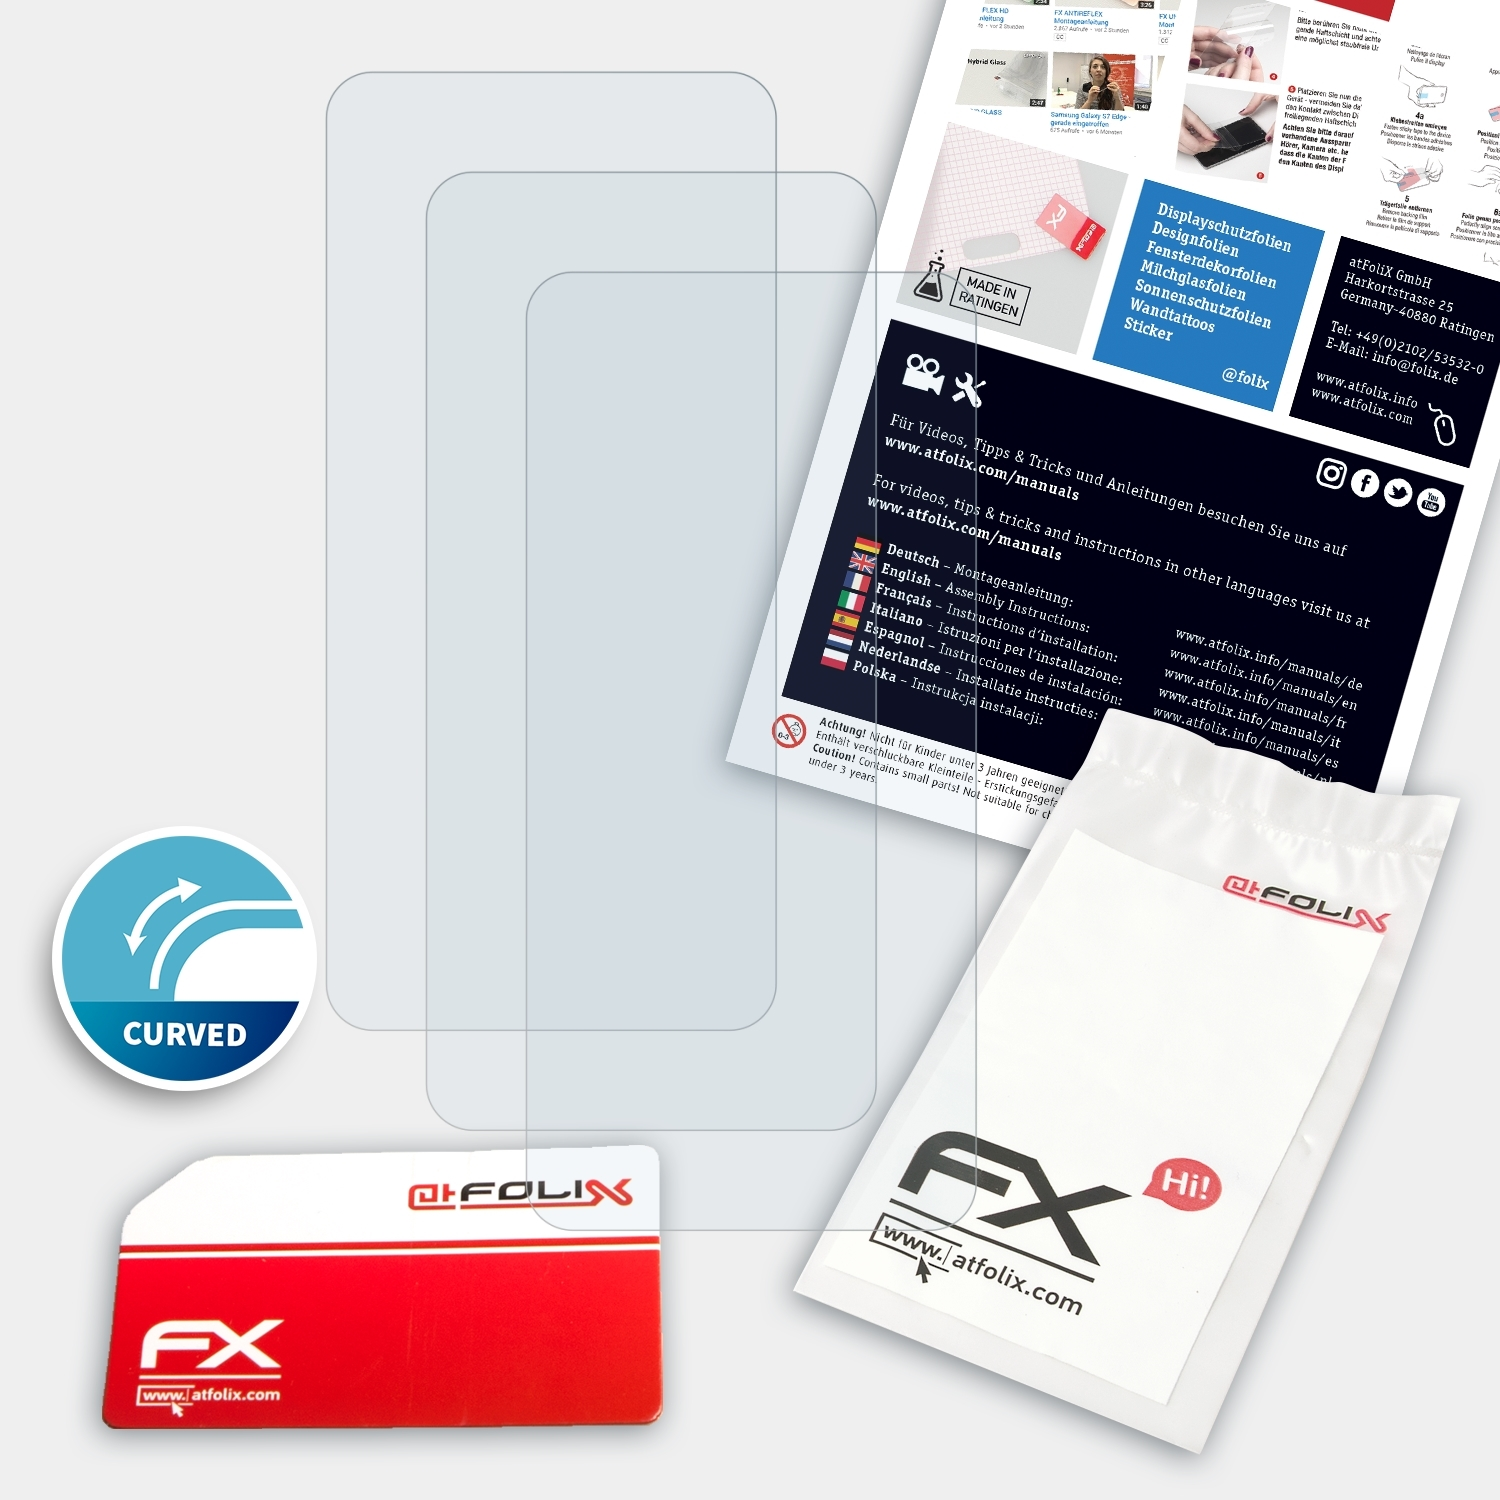 Oppo Displayschutz(für Reno) 3x FX-ActiFleX ATFOLIX